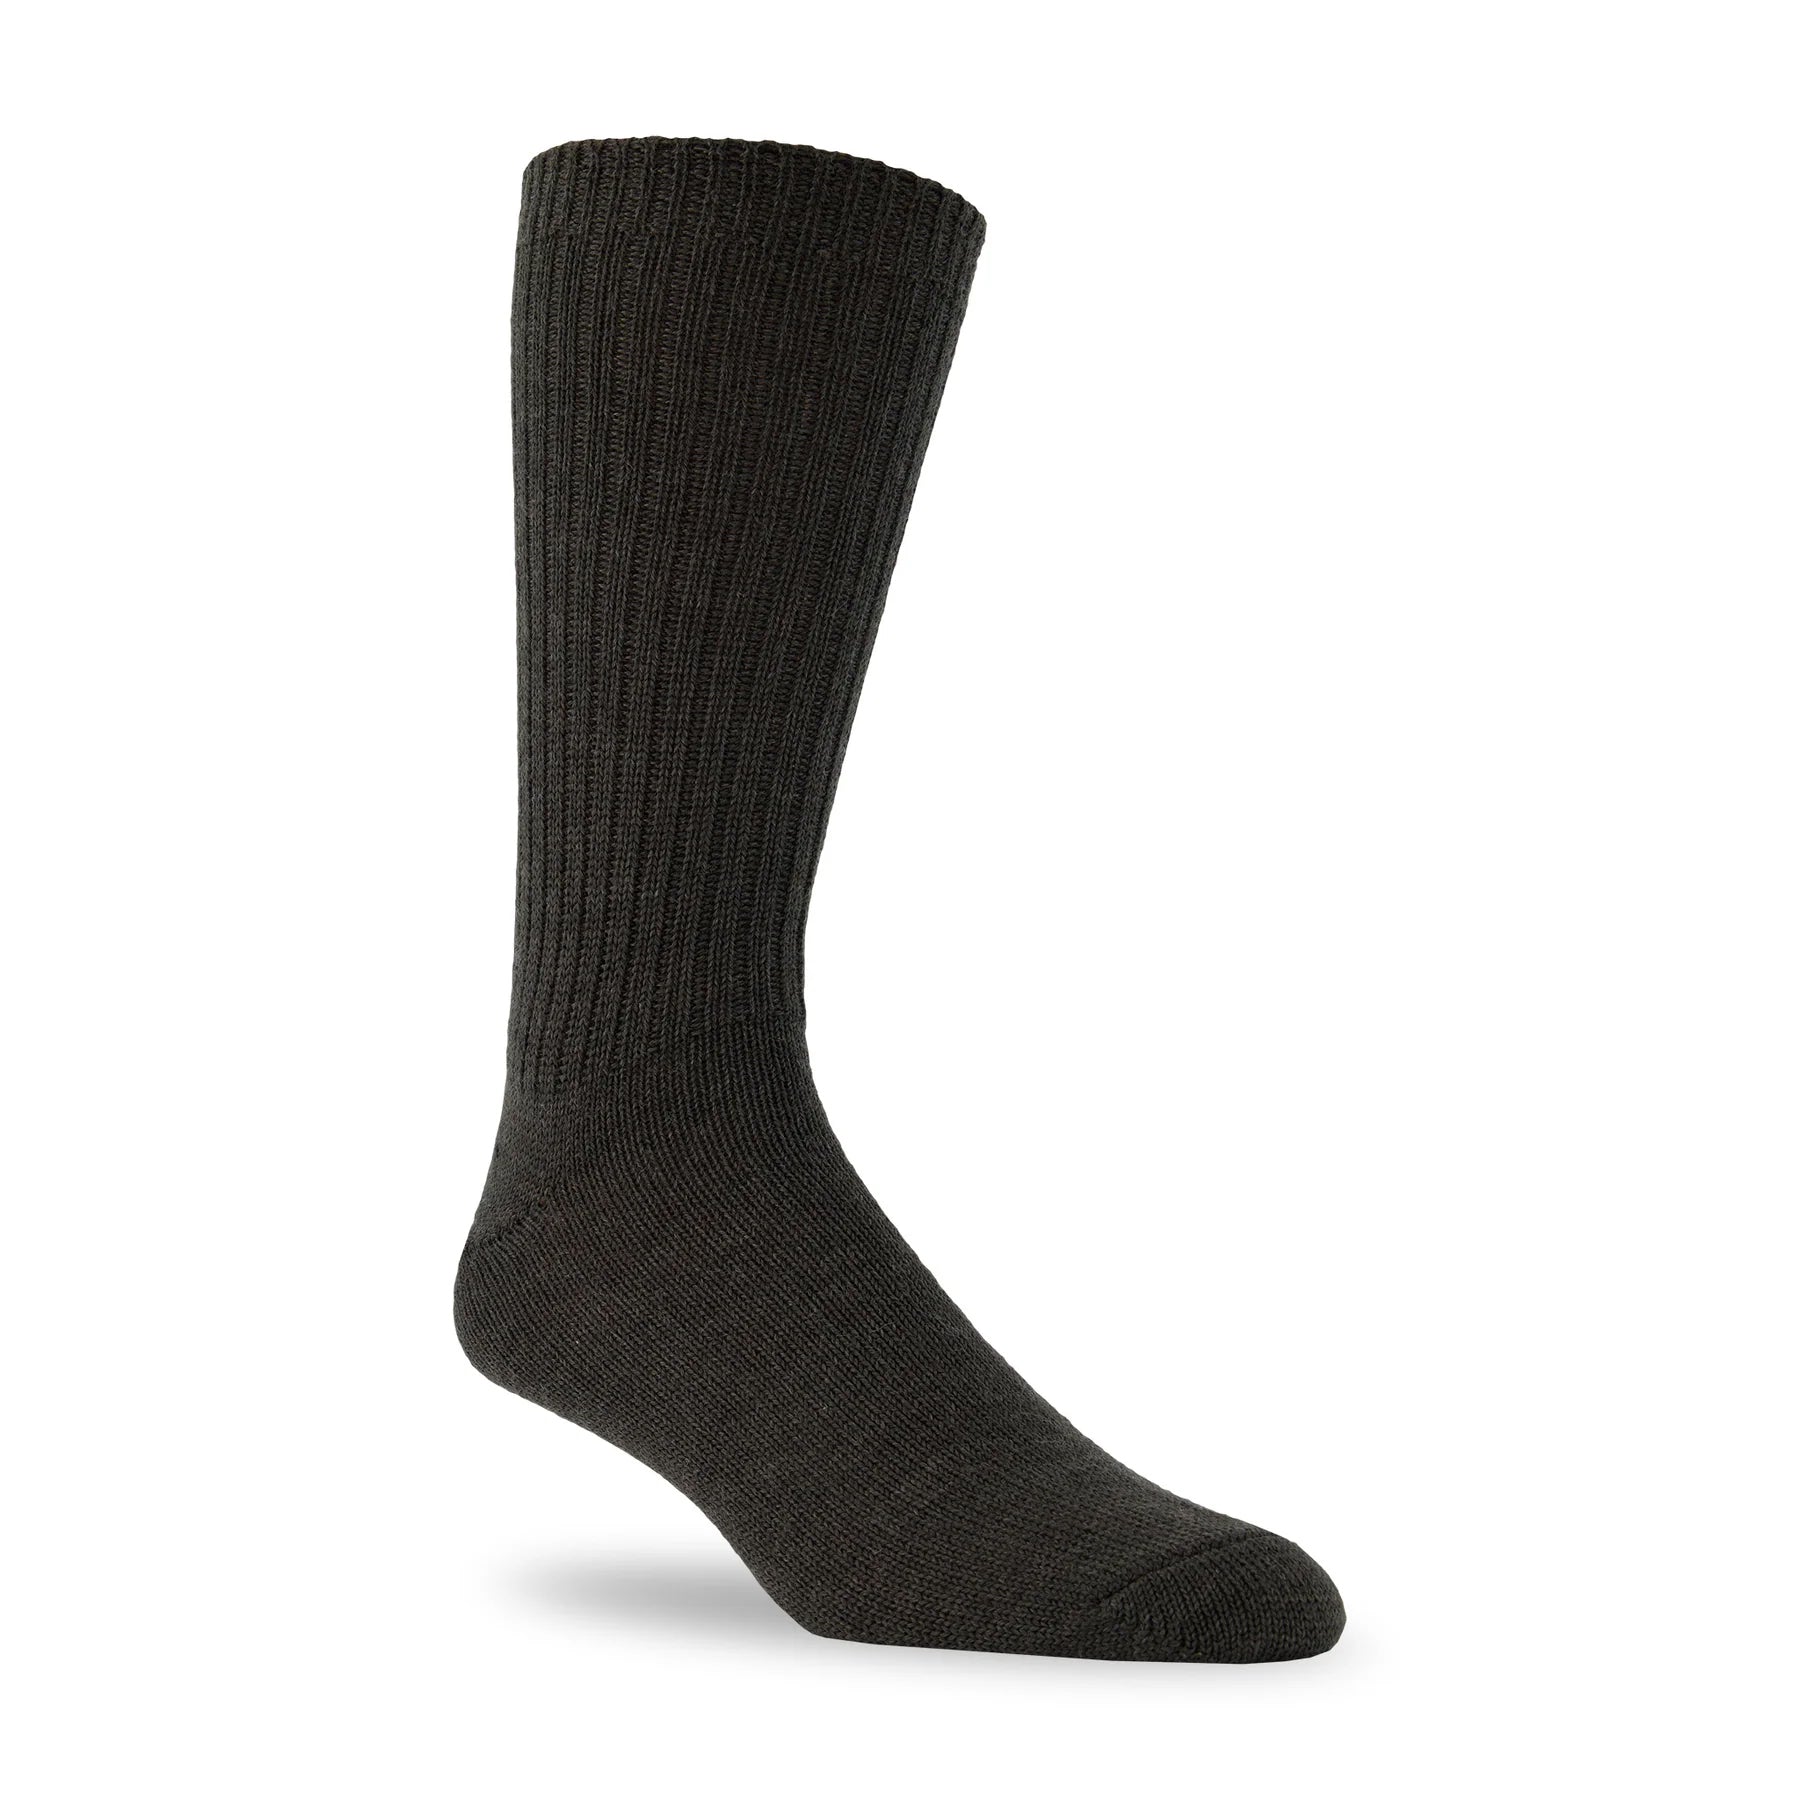 J.B. Field's Naturals Casual Weekender Wool Sock